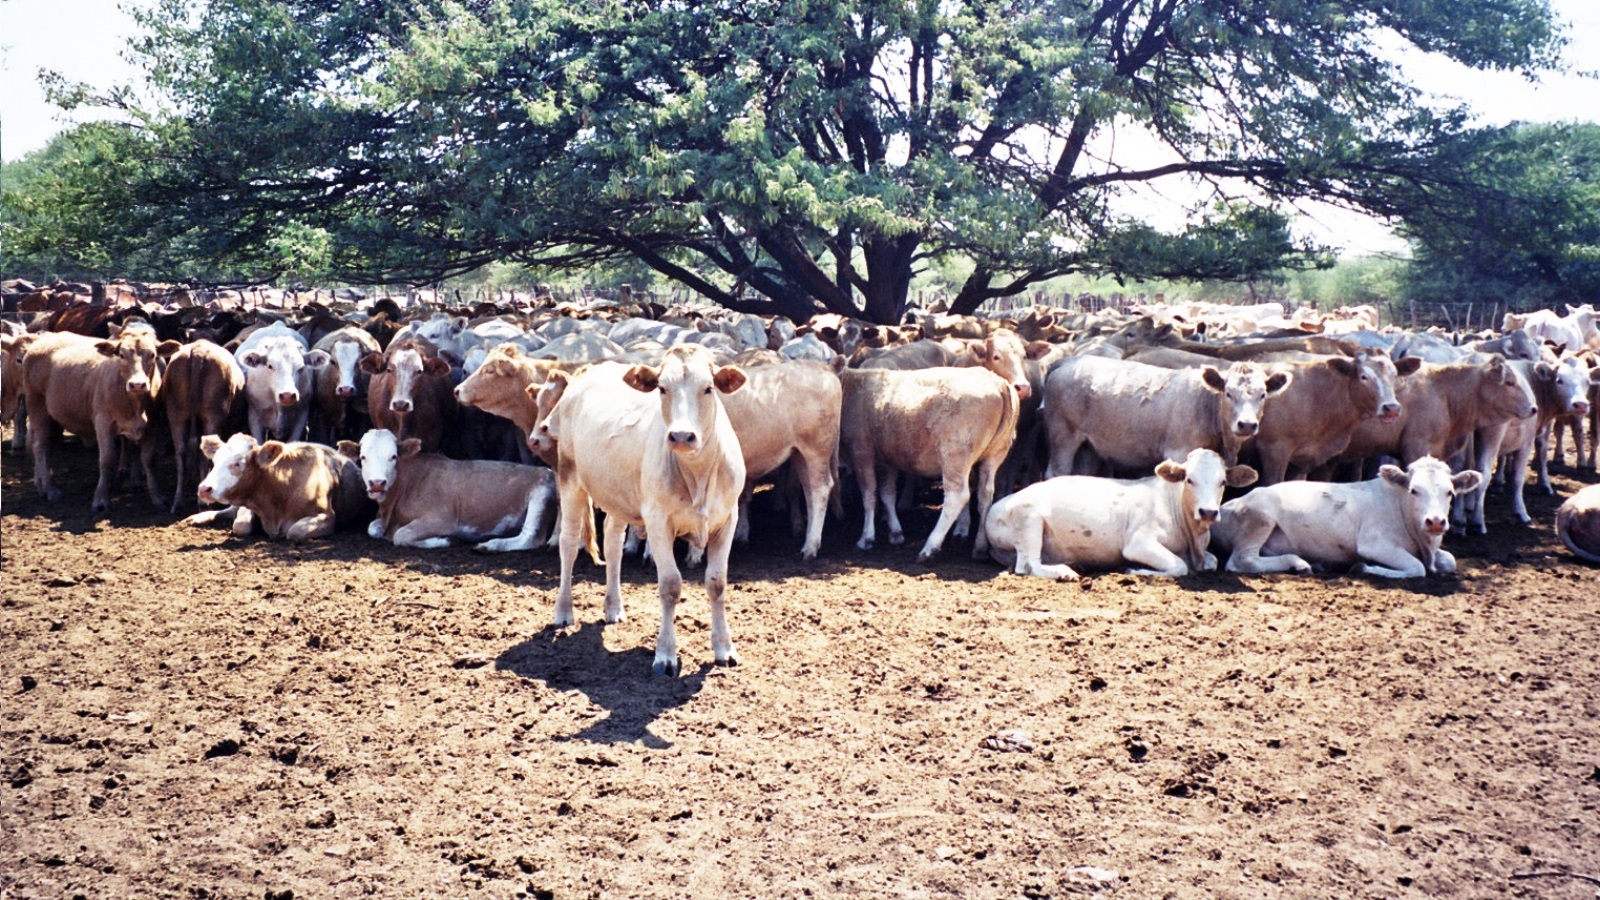 المواشي وخصوصا الأبقار أهم ثروة زراعية لدى البوتسوانيين واليوم تملك نصف العائلات قطيعا من المواشي (الجزيرة)